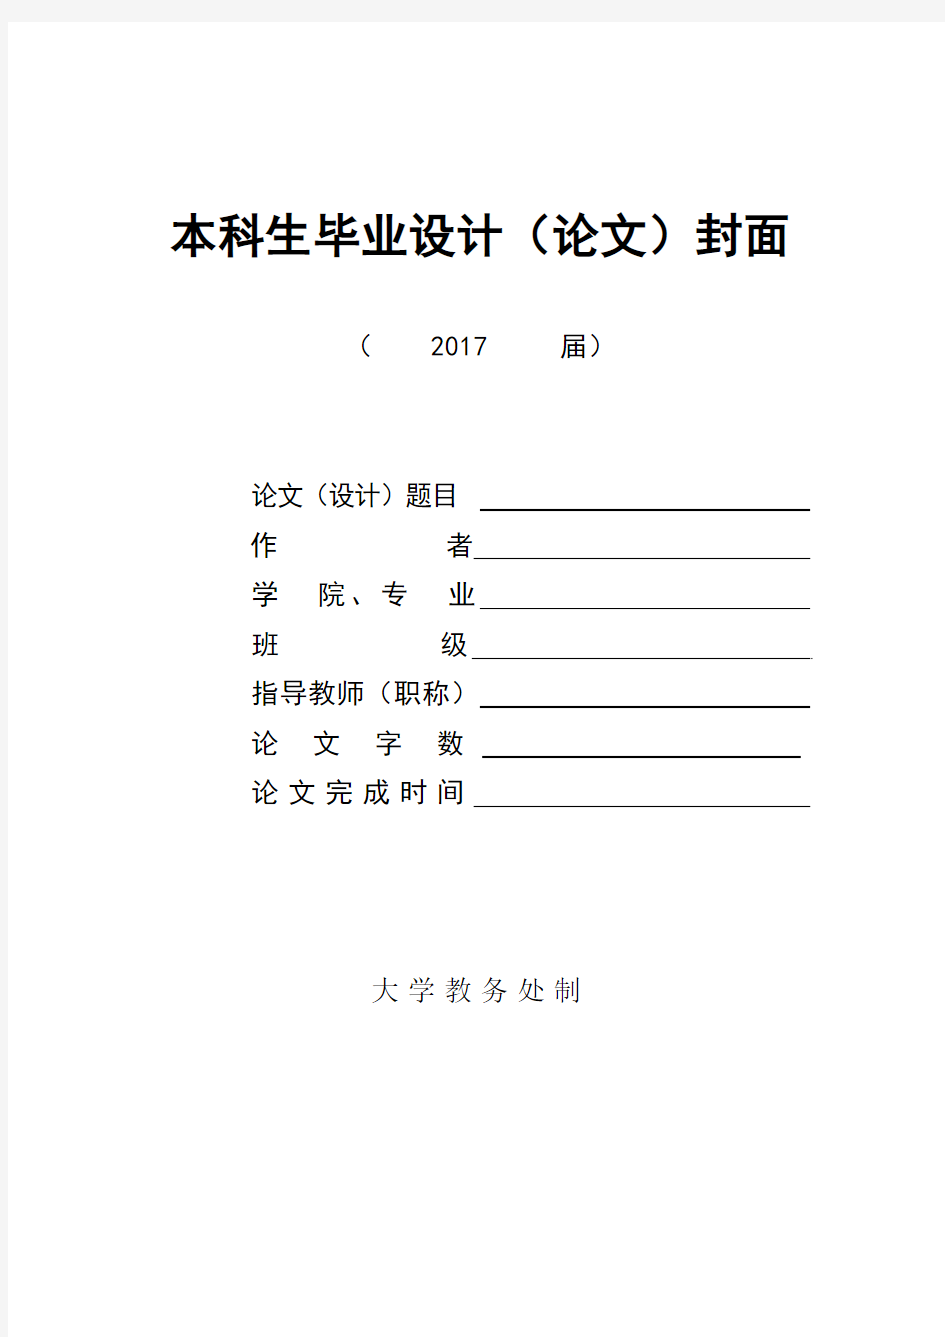 天津万华公司会计信息化实施案例分析